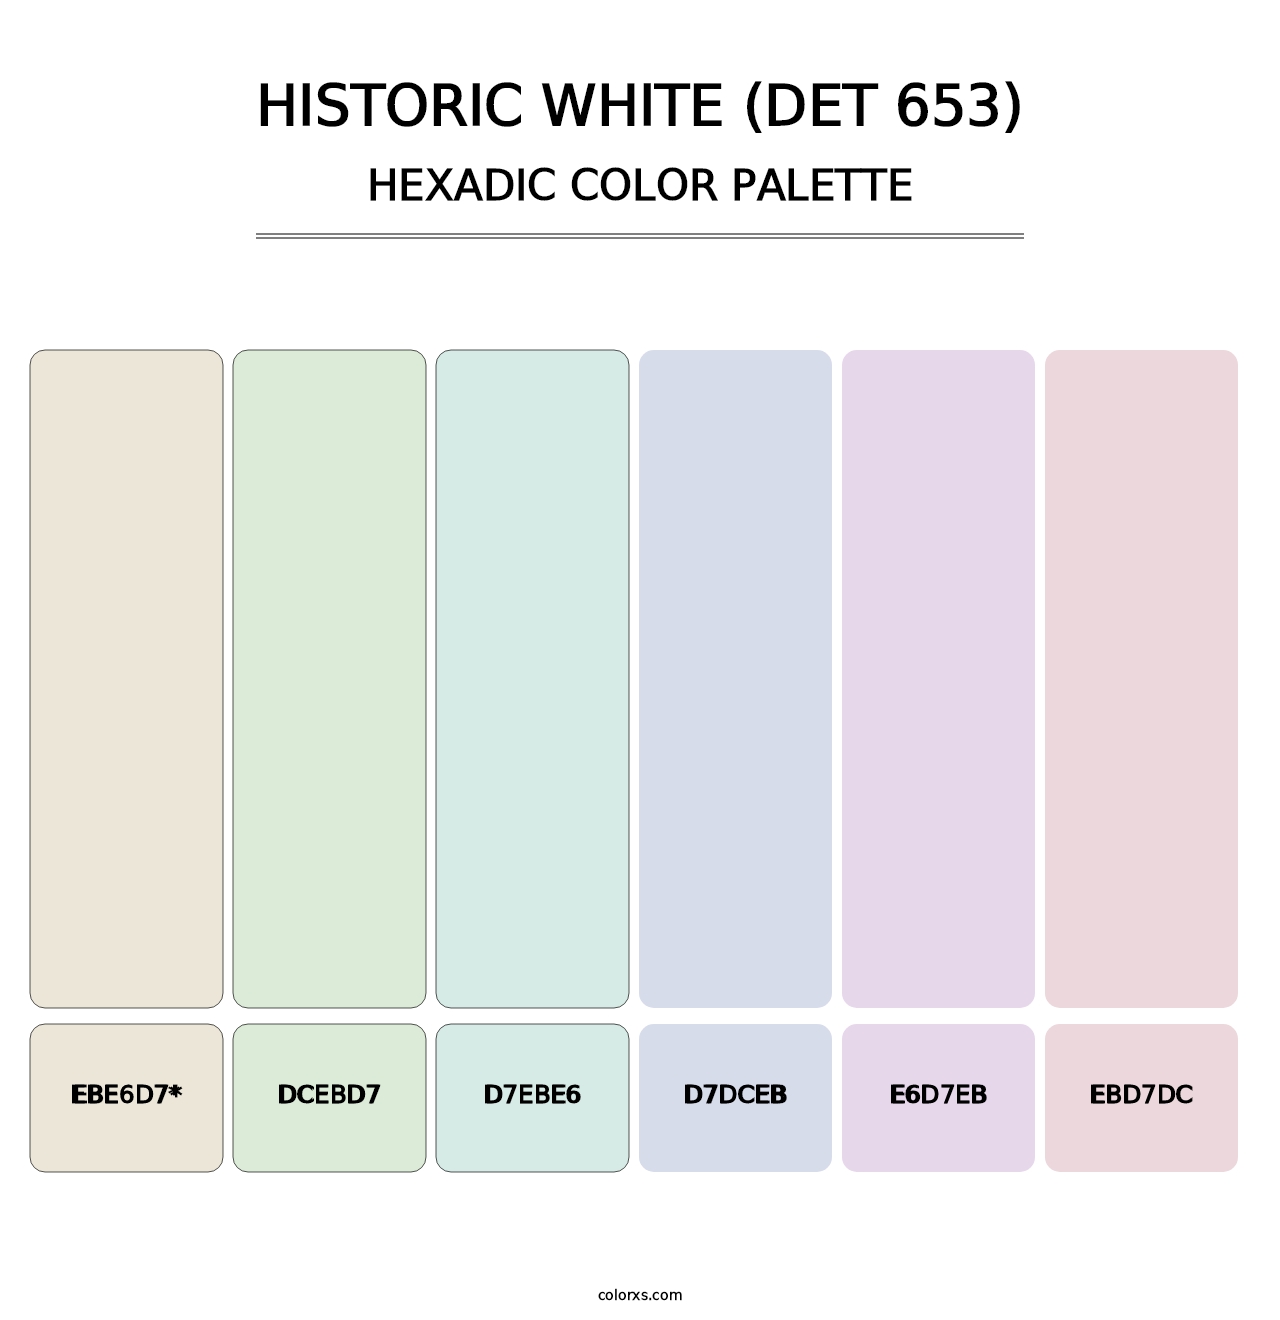 Historic White (DET 653) - Hexadic Color Palette